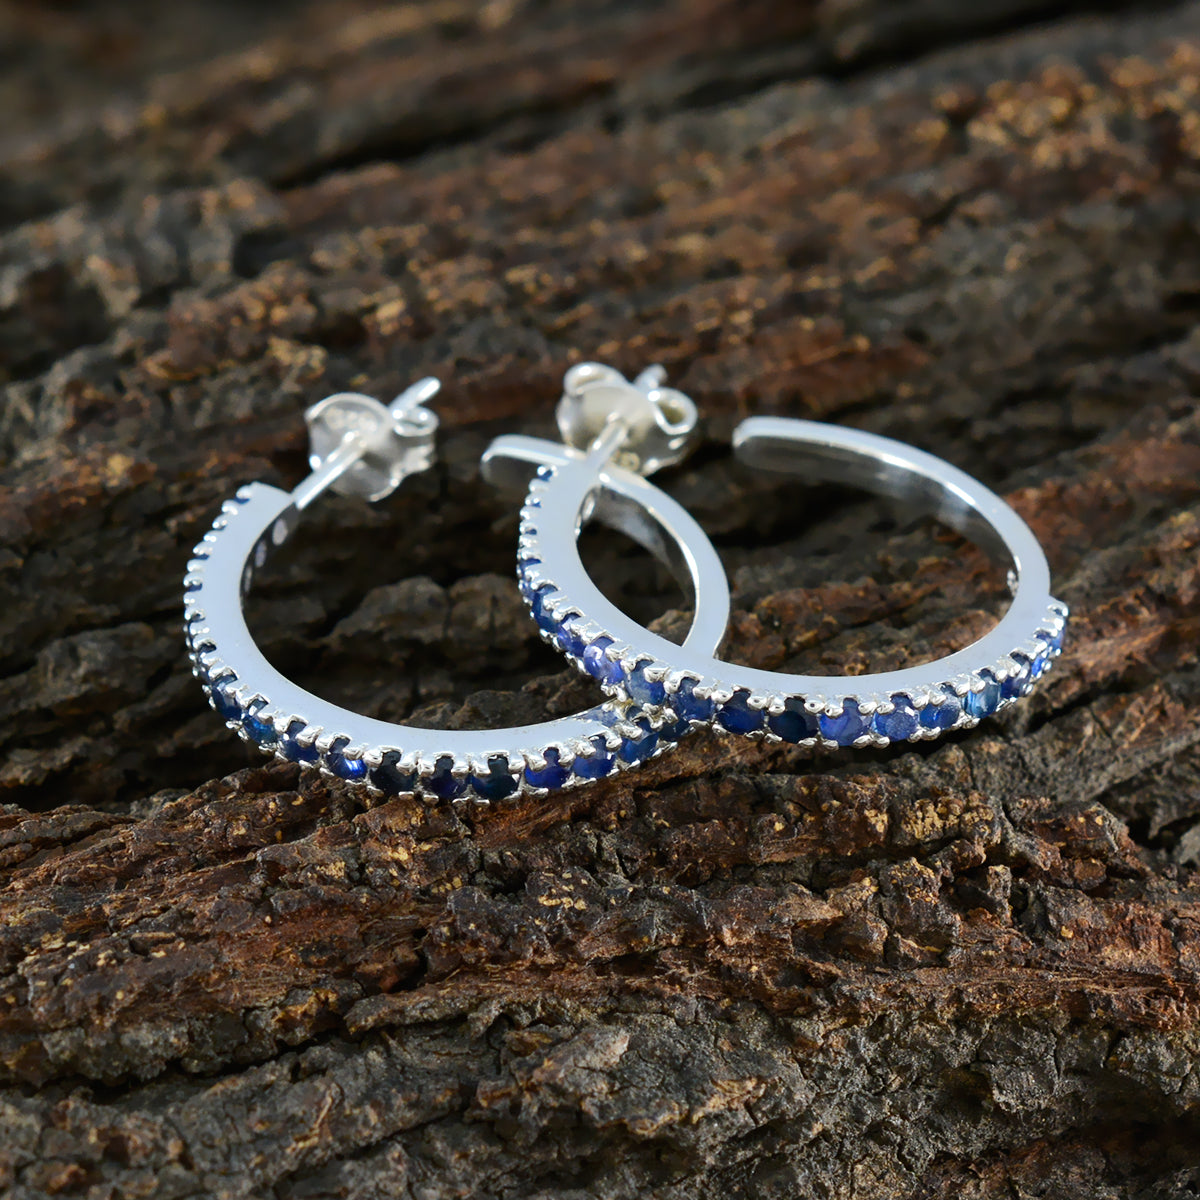 Riyo Lovely 925 Sterling Silver Earring For Women Indian Sapphire Earring Bezel Setting Blue Earring Stud Earring